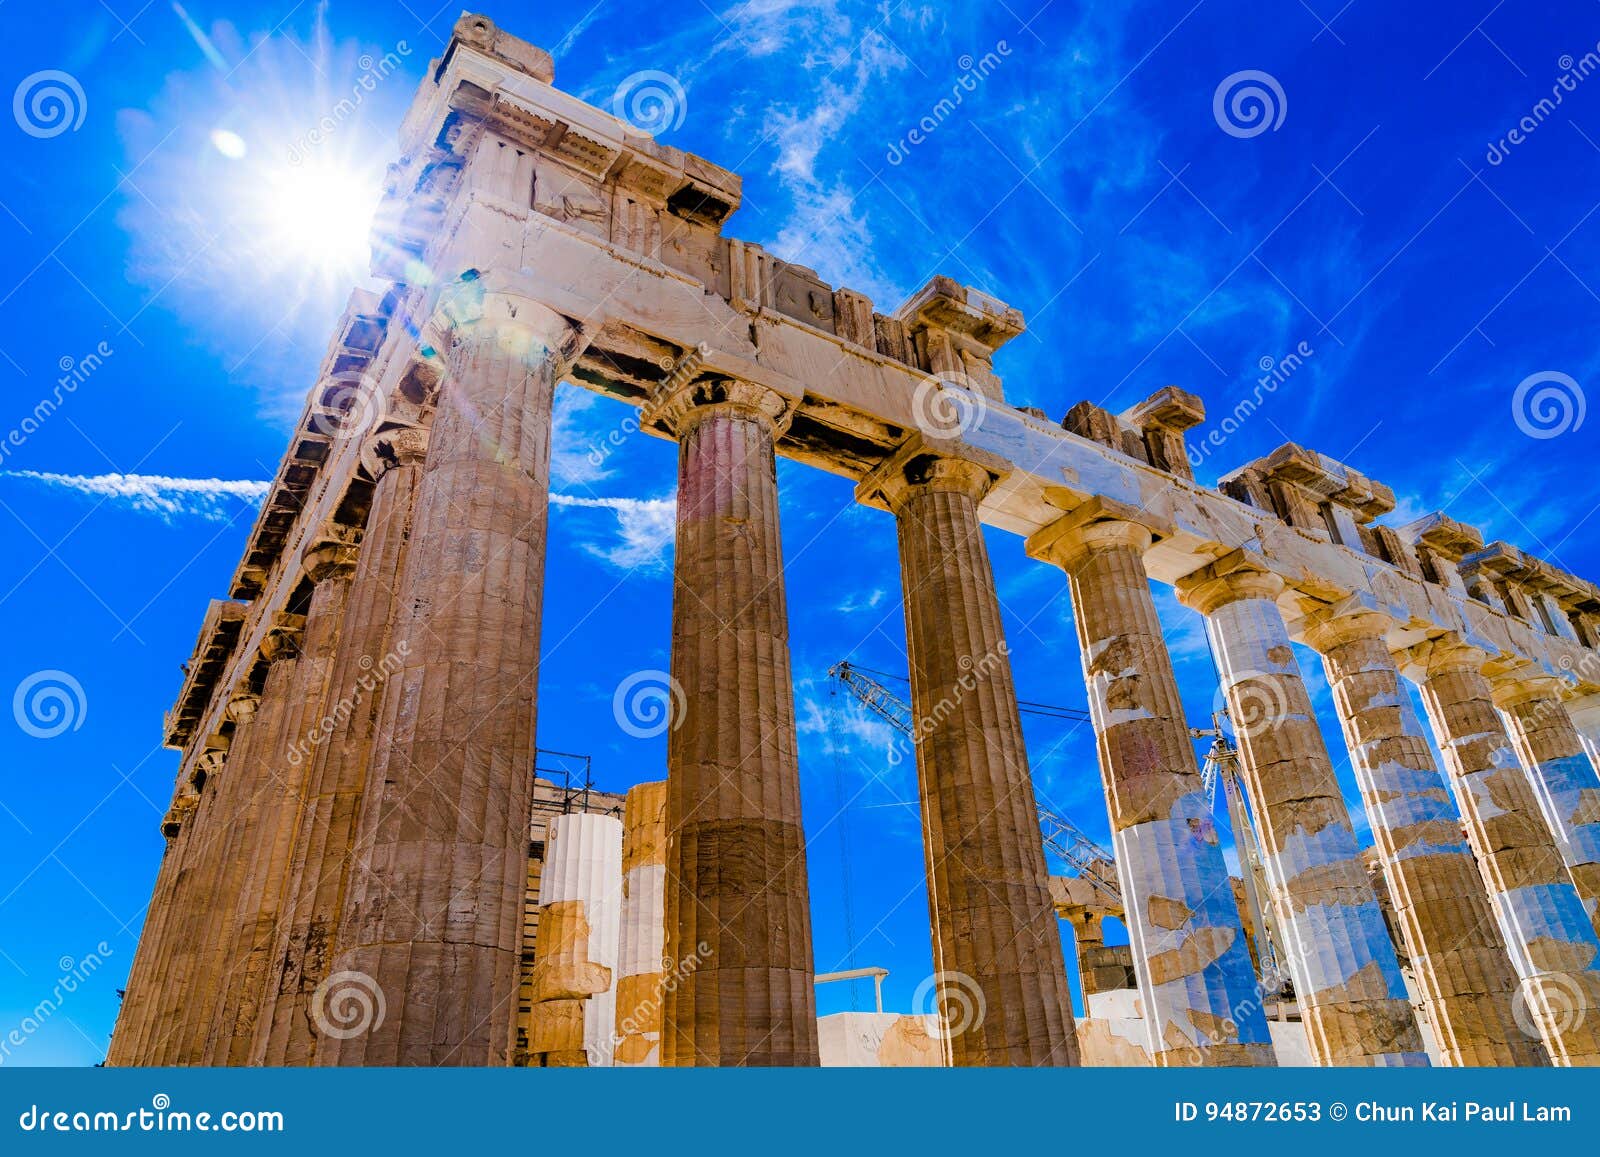 acropolis of athens greece